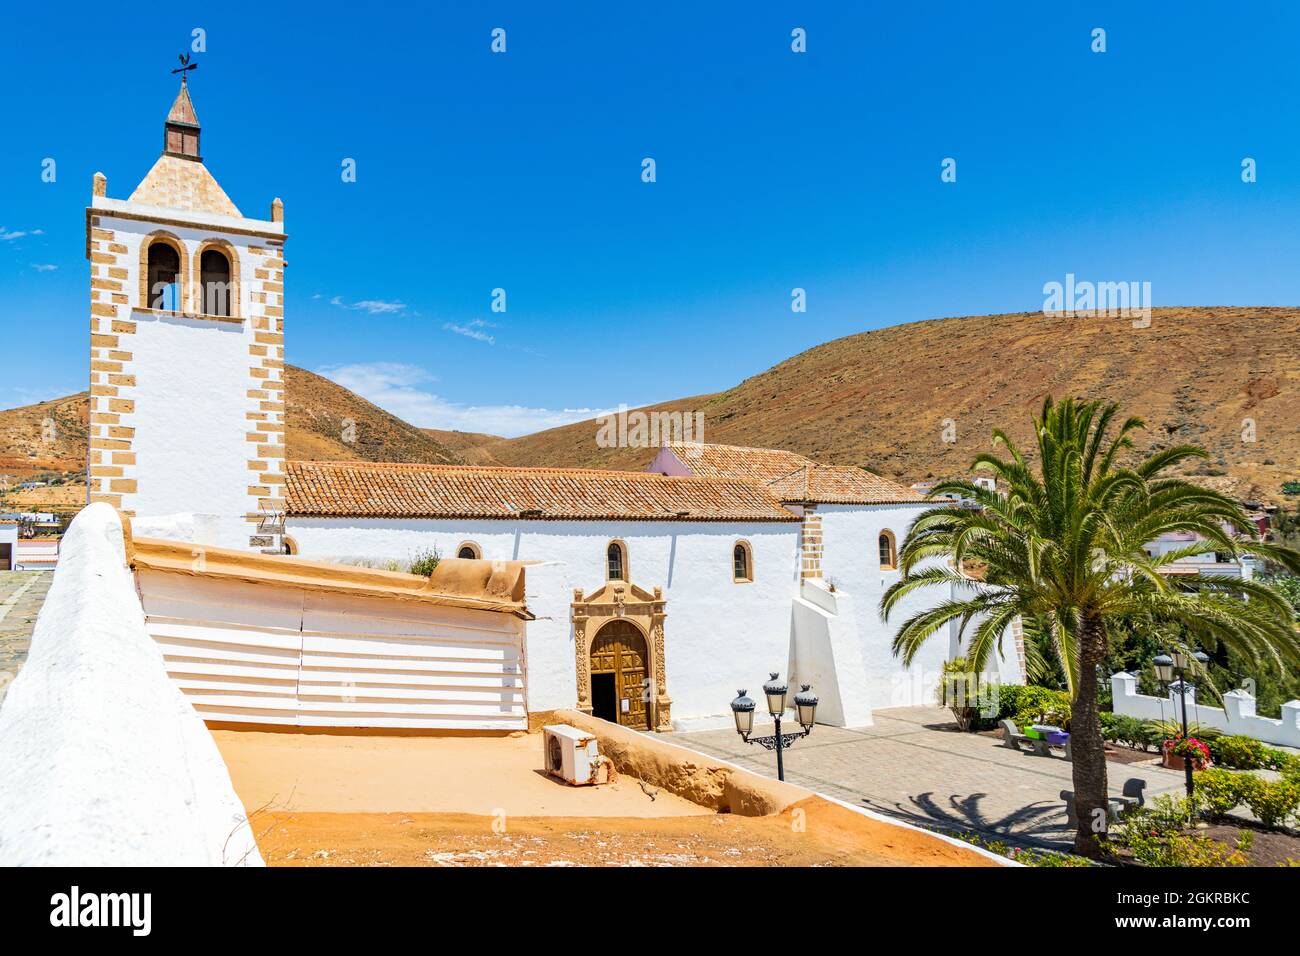 Cielo azzurro sulla chiesa imbiancata di Iglesia de Santa Maria, Betancuria, Fuerteventura, Isole Canarie, Spagna, Atlantico, Europa Foto Stock